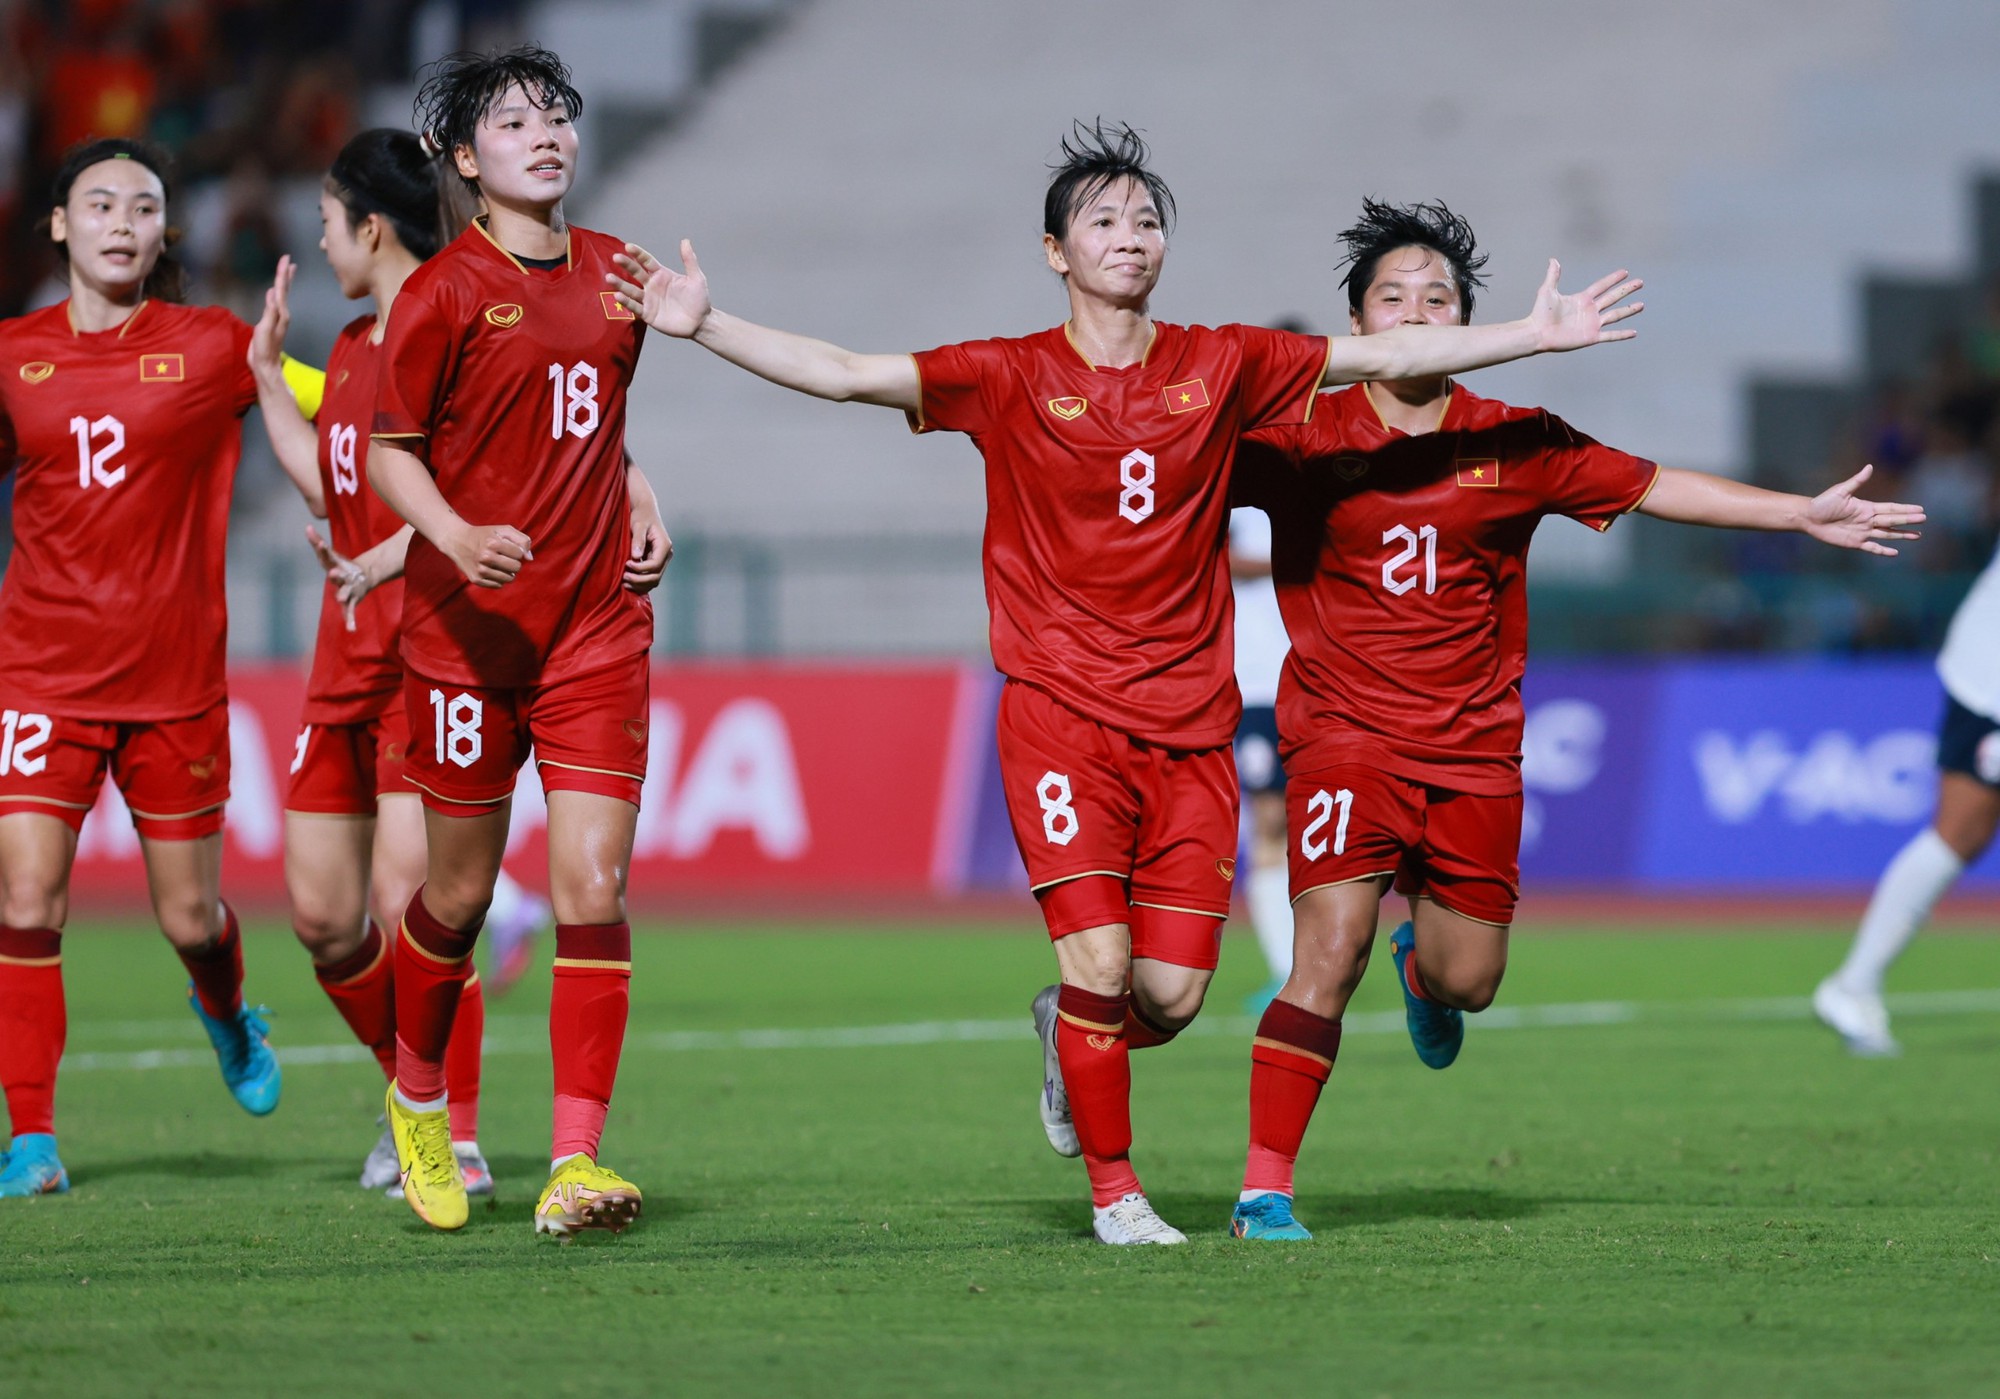 Lịch thi đấu bóng đá nữ SEA Games 32 hôm nay 15.5: Đội tuyển nữ Việt Nam nhắm HCV thứ 4 liên tiếp - Ảnh 2.